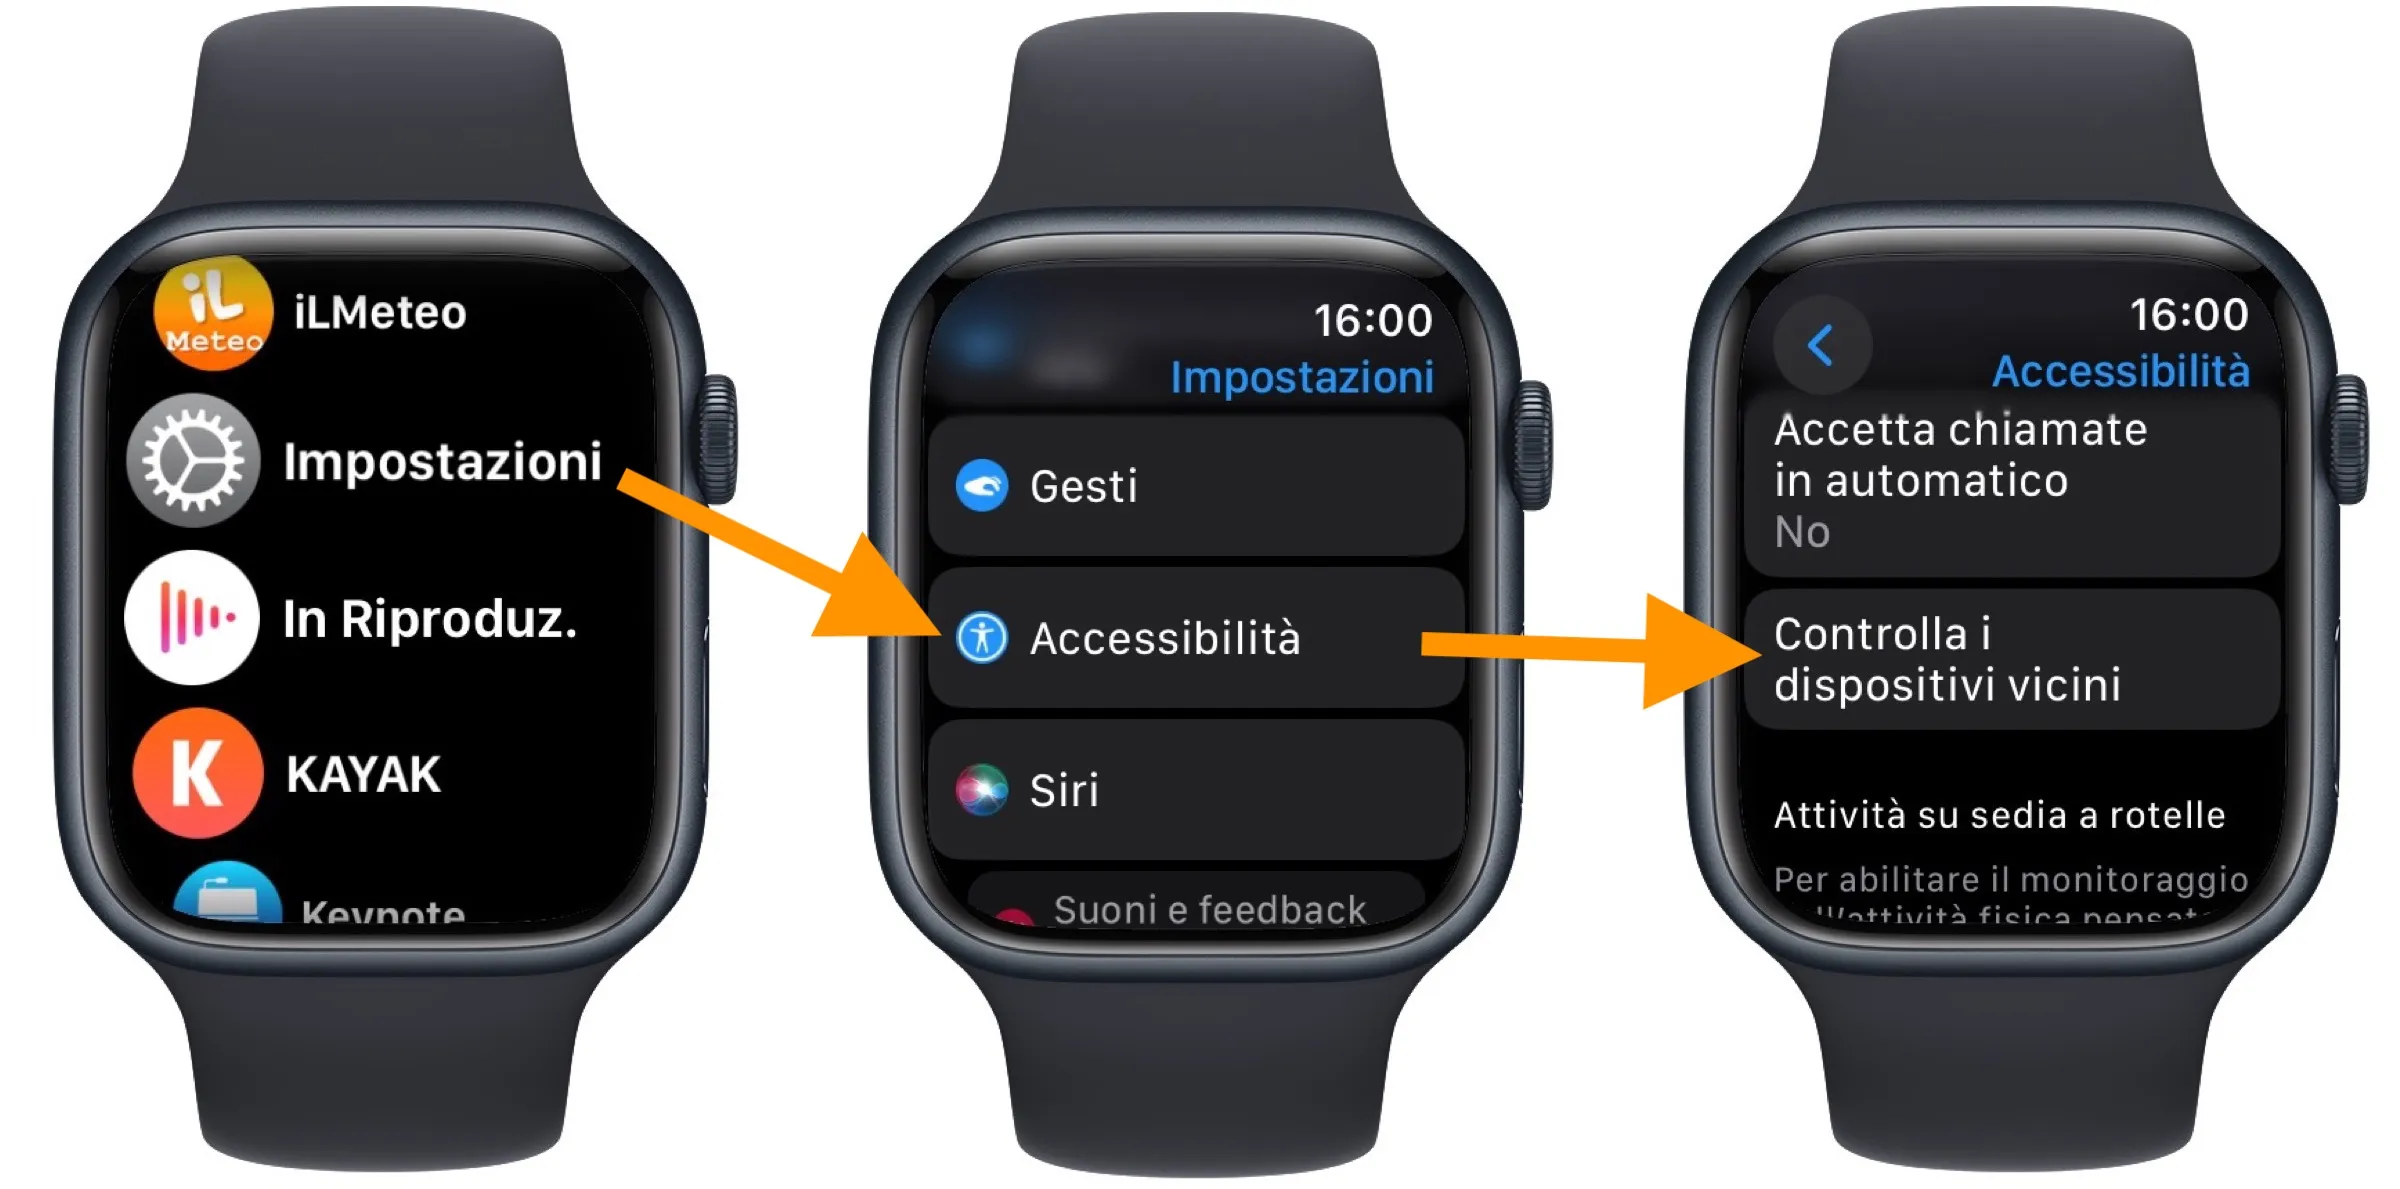 Come controllare iPhone coi gesti della mano indossando Apple Watch